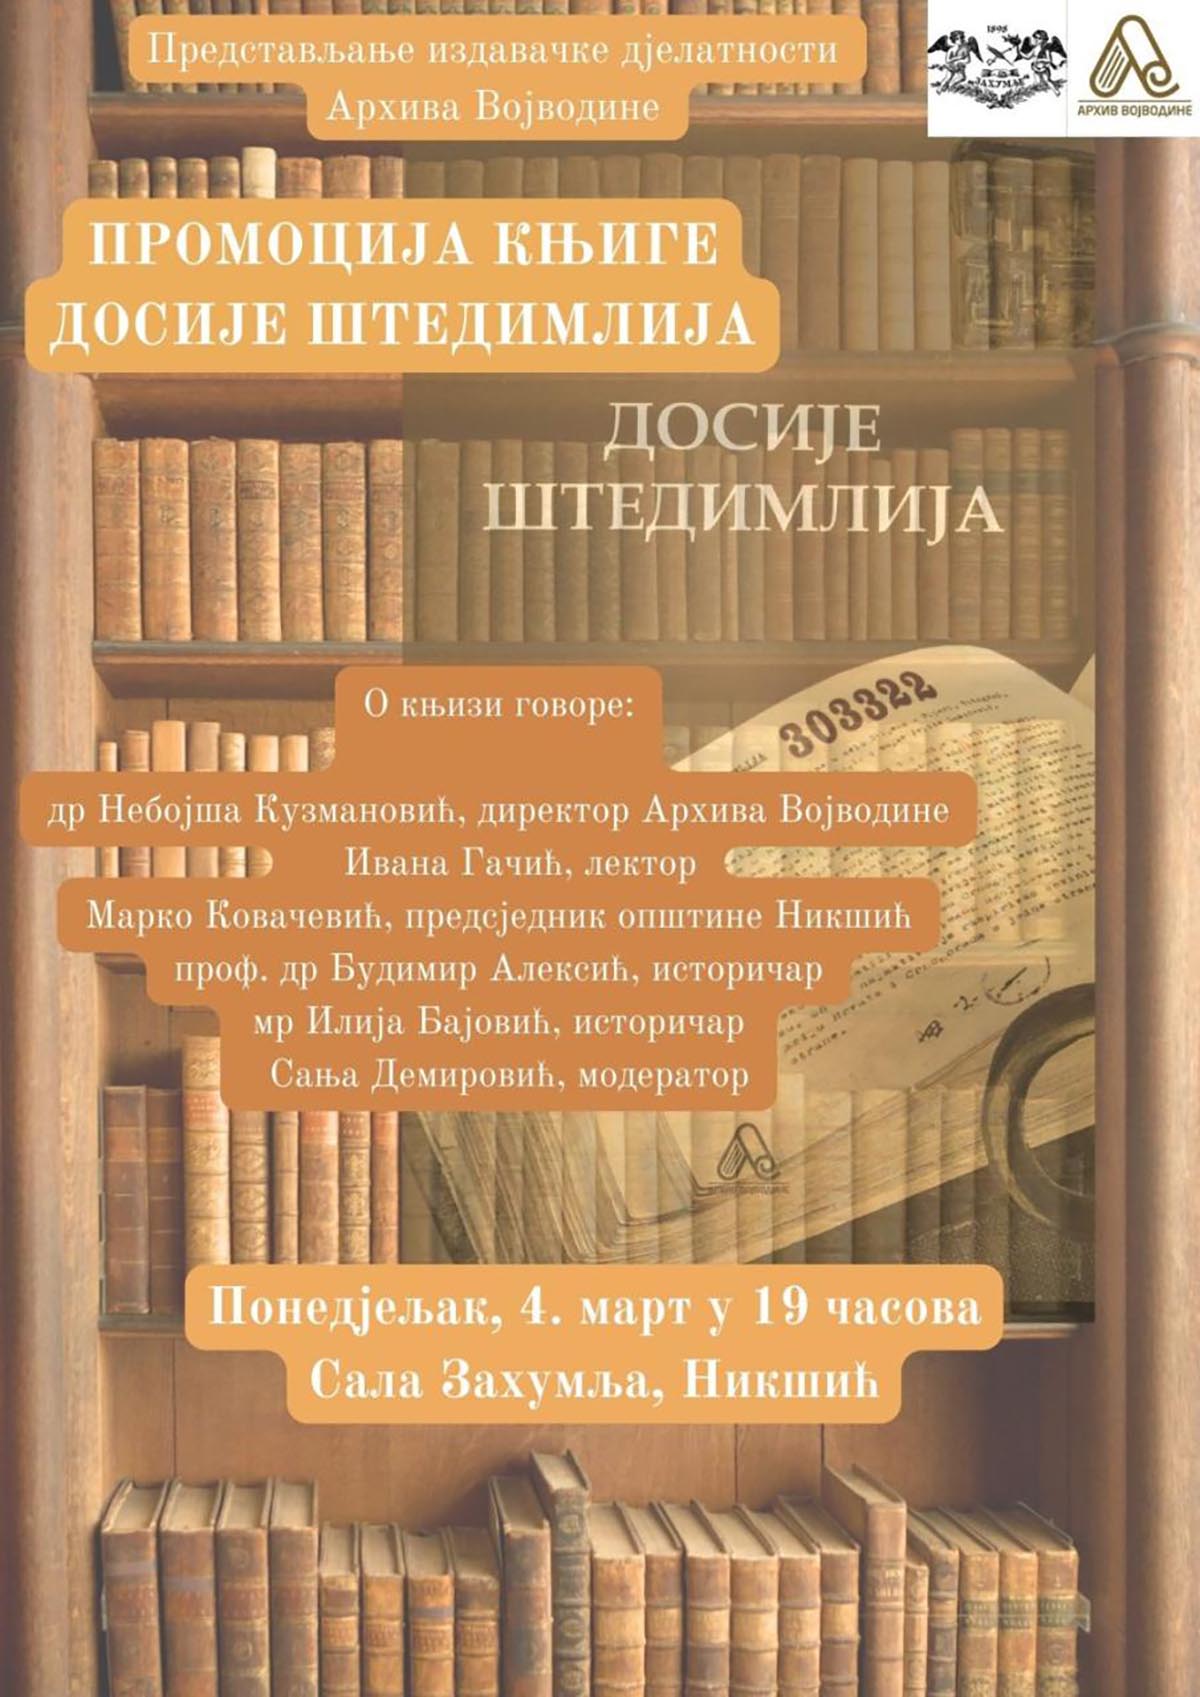 Представљање издавачке дјелатности Архива Војводине 4. марта у Никшићу